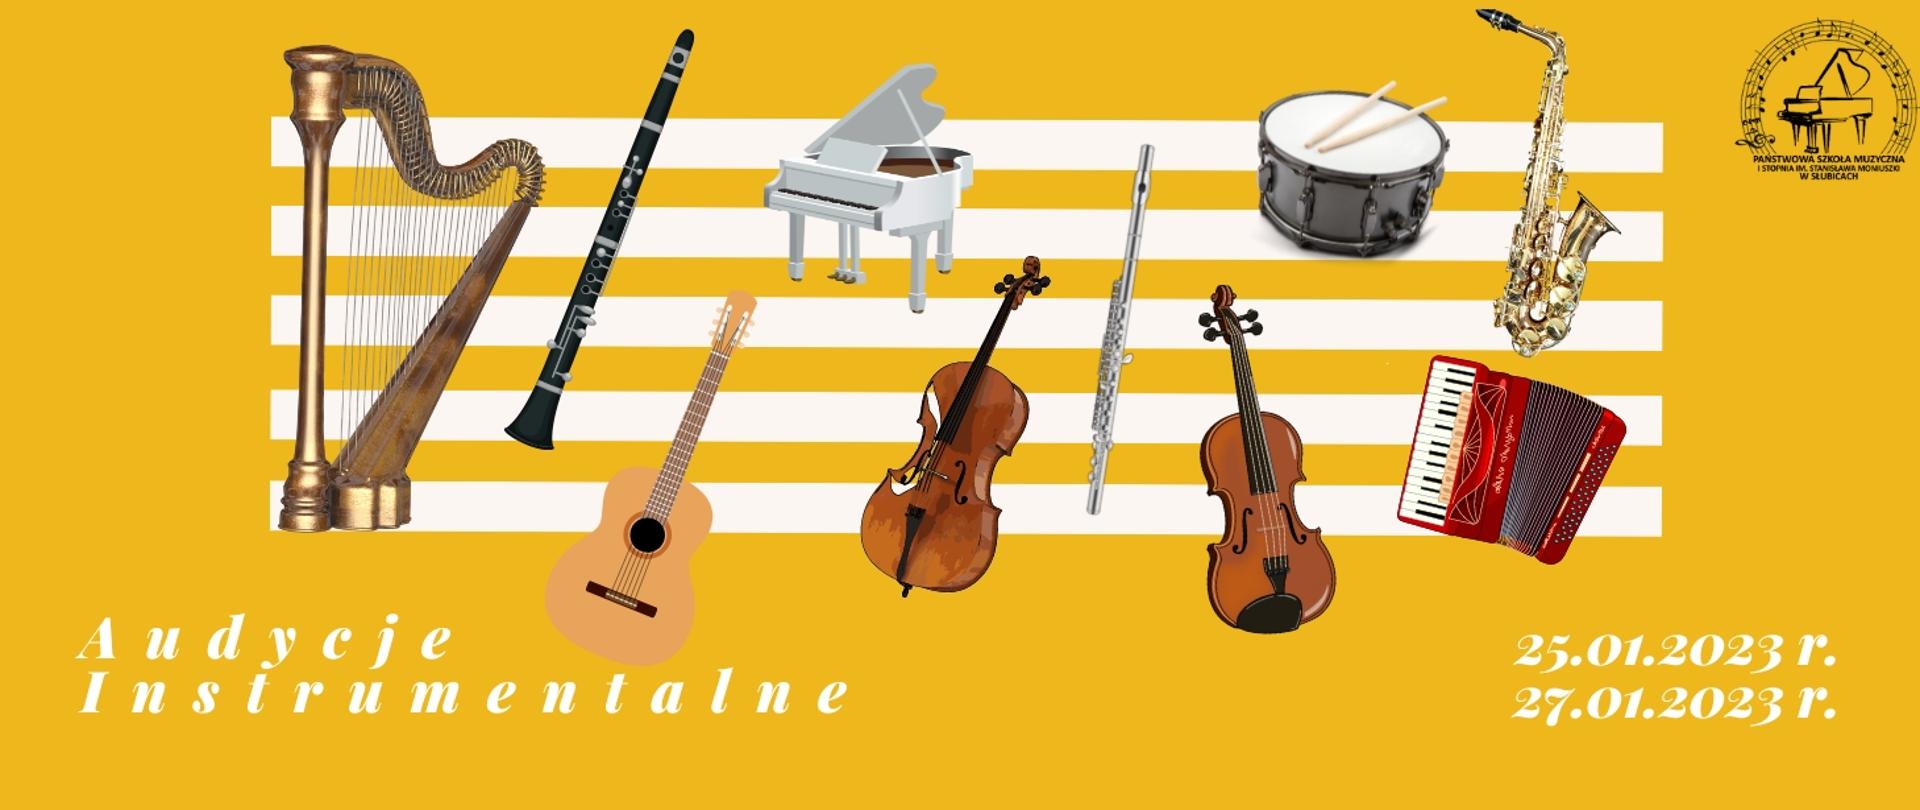 Grafika zapowiadająca audycje instrumentalne.Na żółtym tle rysunki instrumentów muzycznych, logo szkoły i tekst określający datę i miejsce wydarzenia.